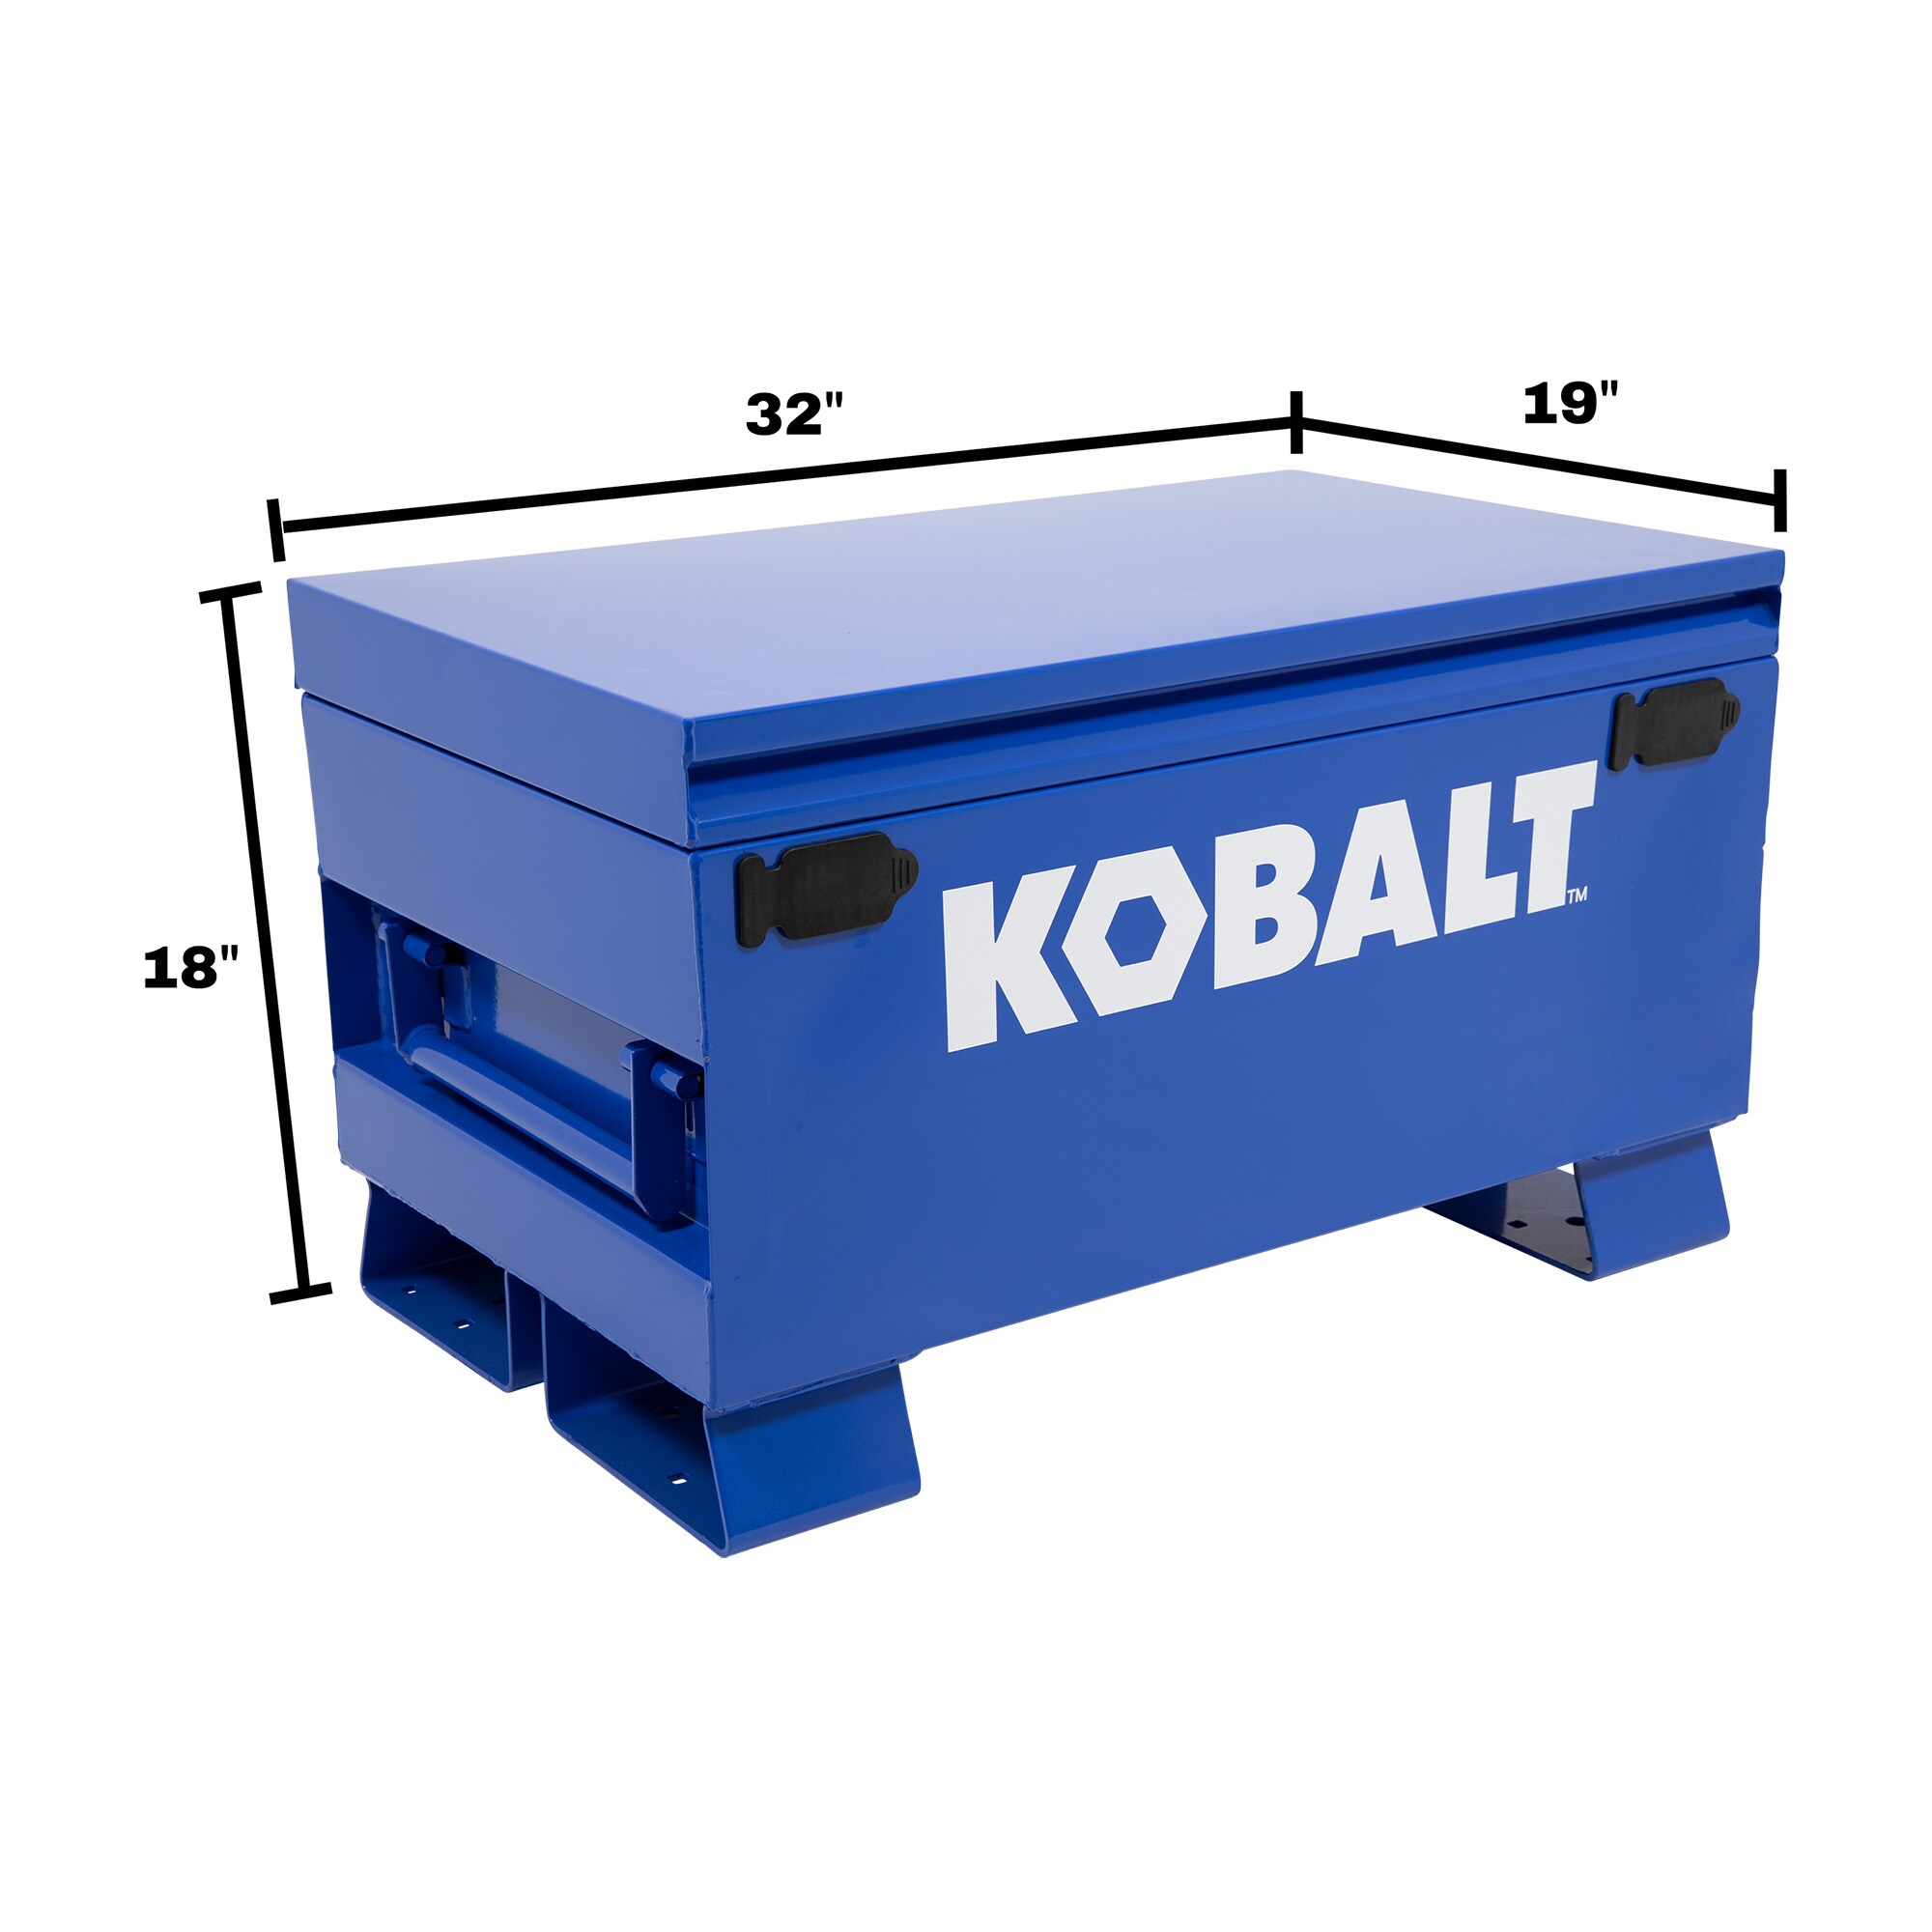 Kobalt 19-in W x 32-in L x 18-in H Blue Steel Jobsite Box at